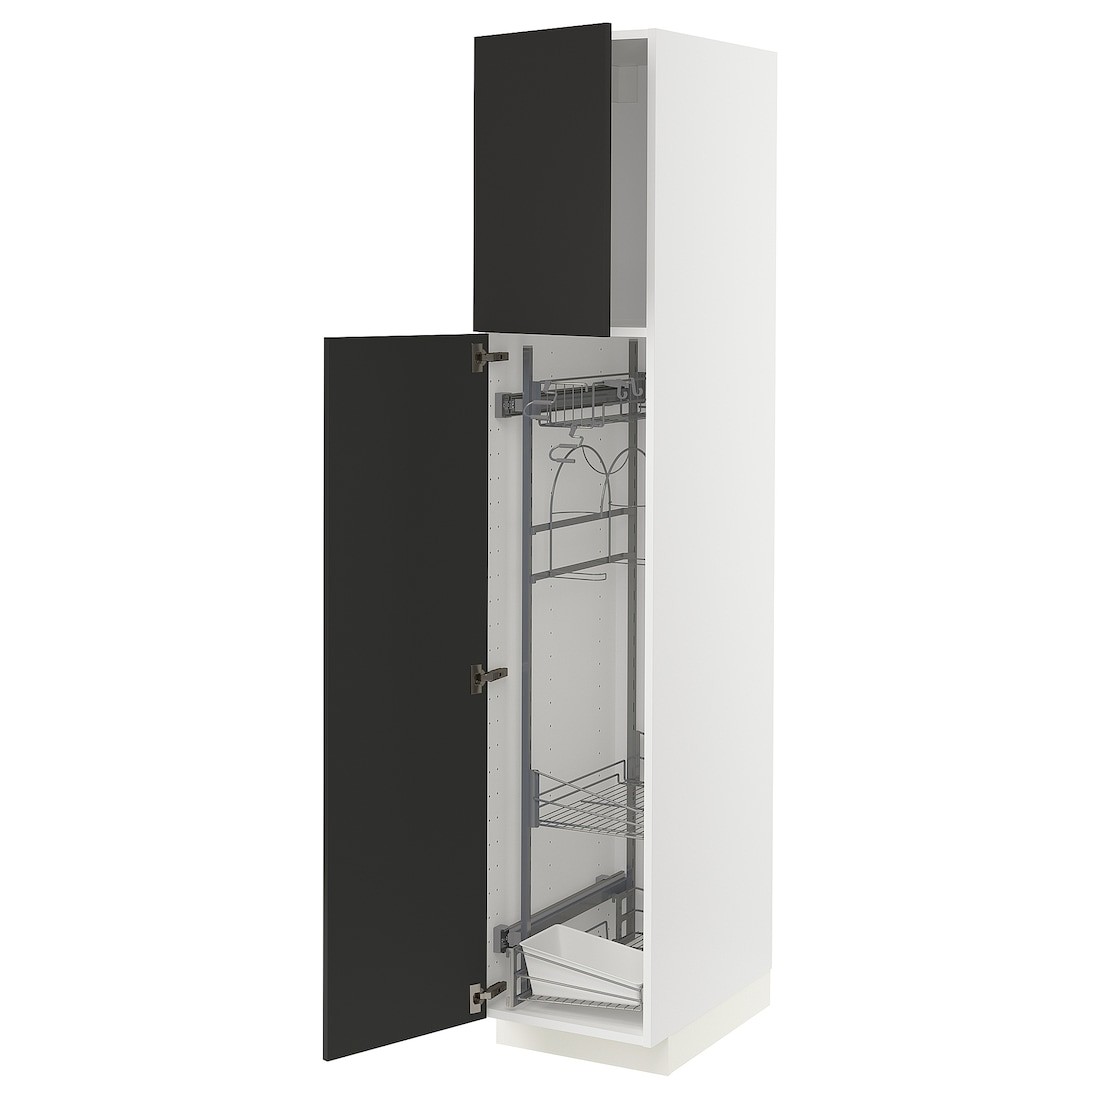 METOD МЕТОД Высокий шкаф с отделением для аксессуаров для уборки, белый / Nickebo матовый антрацит, 40x60x200 см